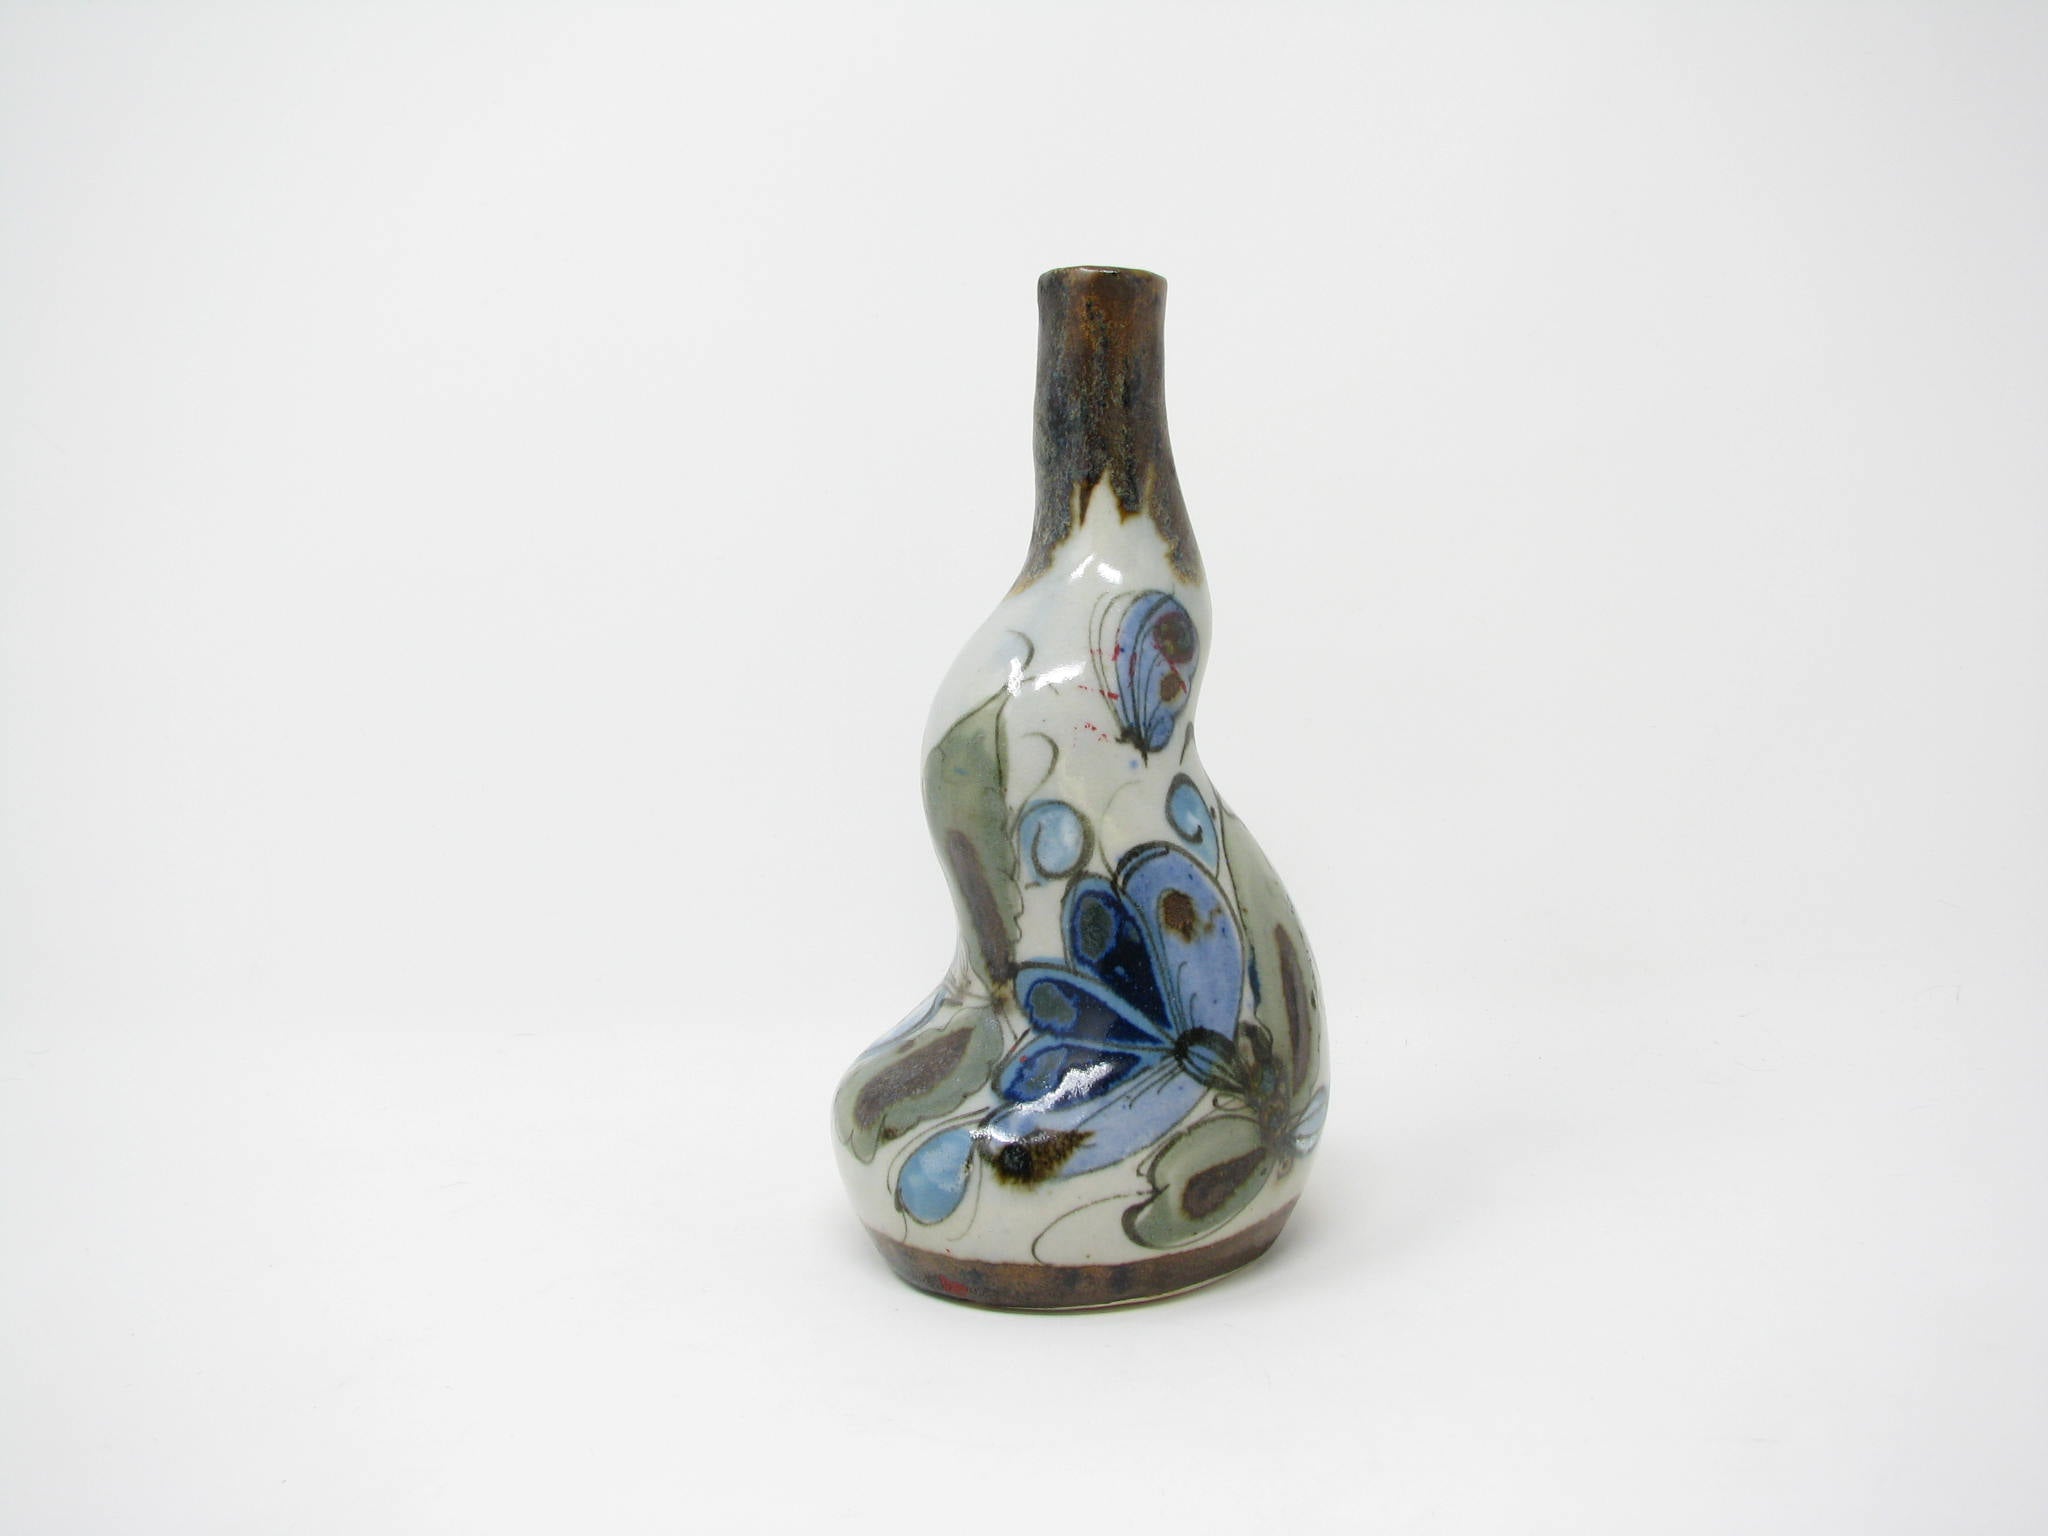 edgebrookhouse - Vintage Ken Edwards Palomar Tonala Mexican Stoneware Pottery Bud Vase with Organic Shape